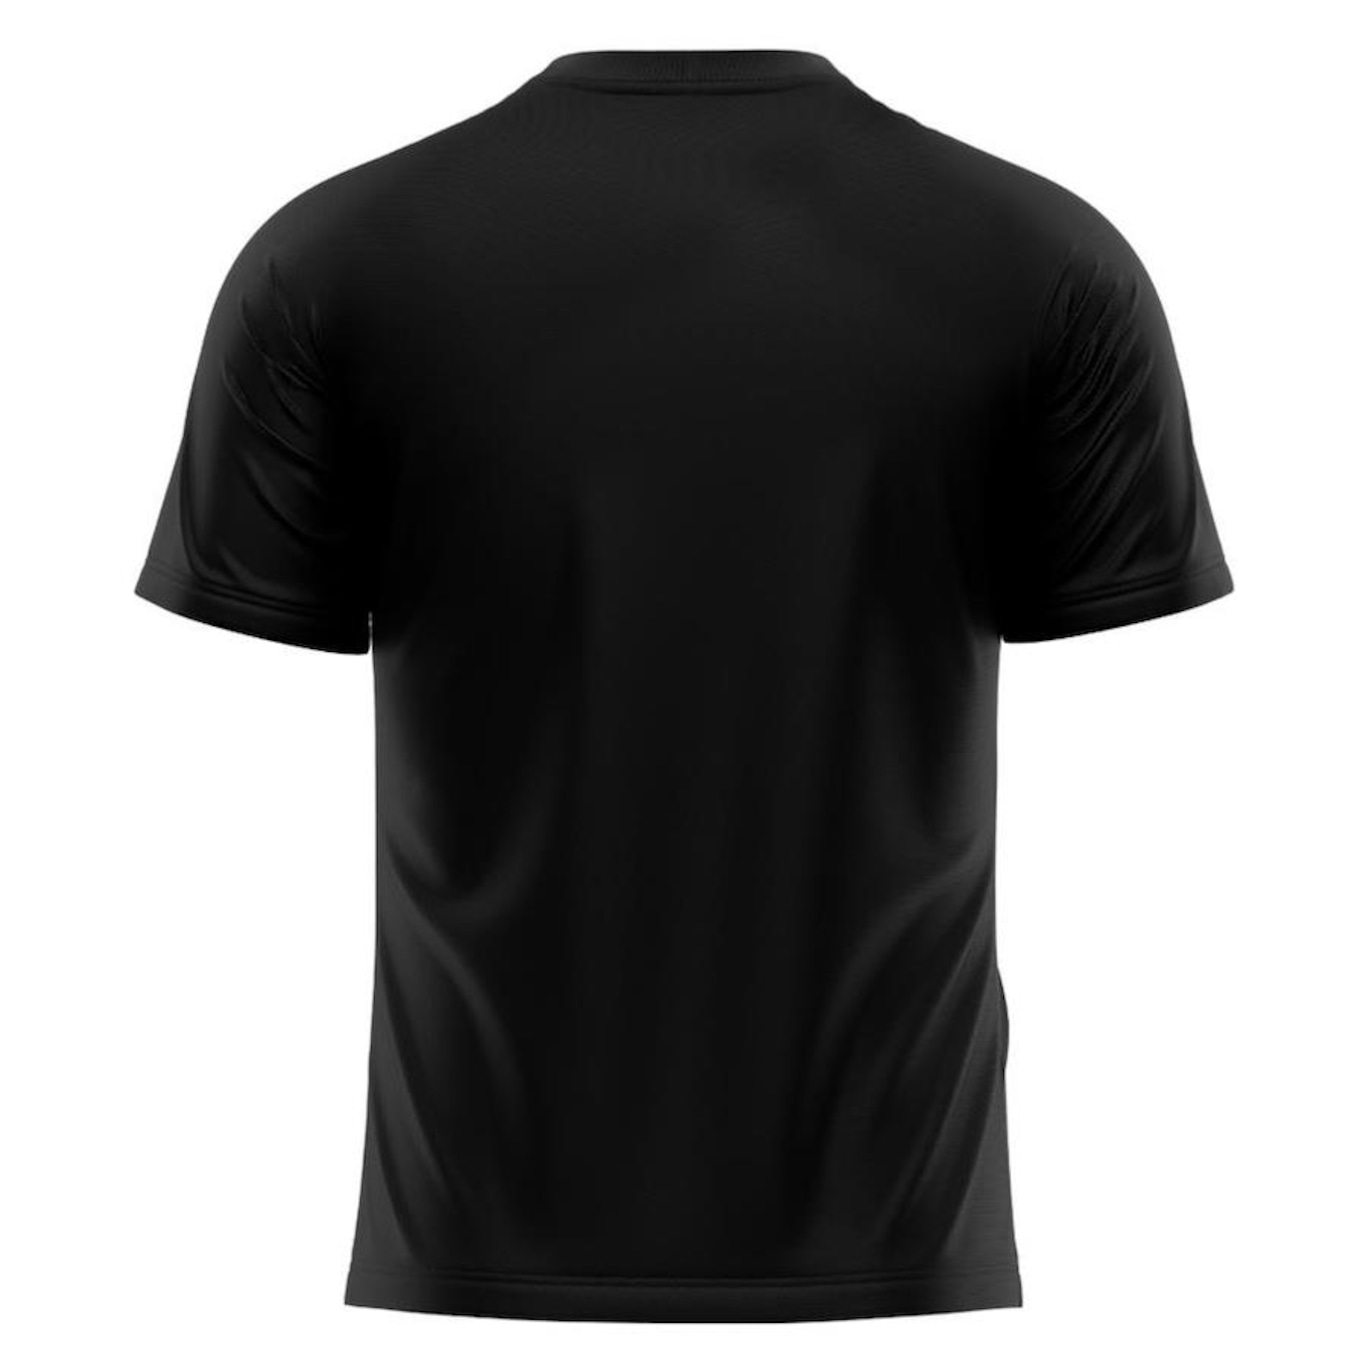 Camiseta Adriben Dry Fit Proteção Solar Uv Térmica - Masculina - Foto 2